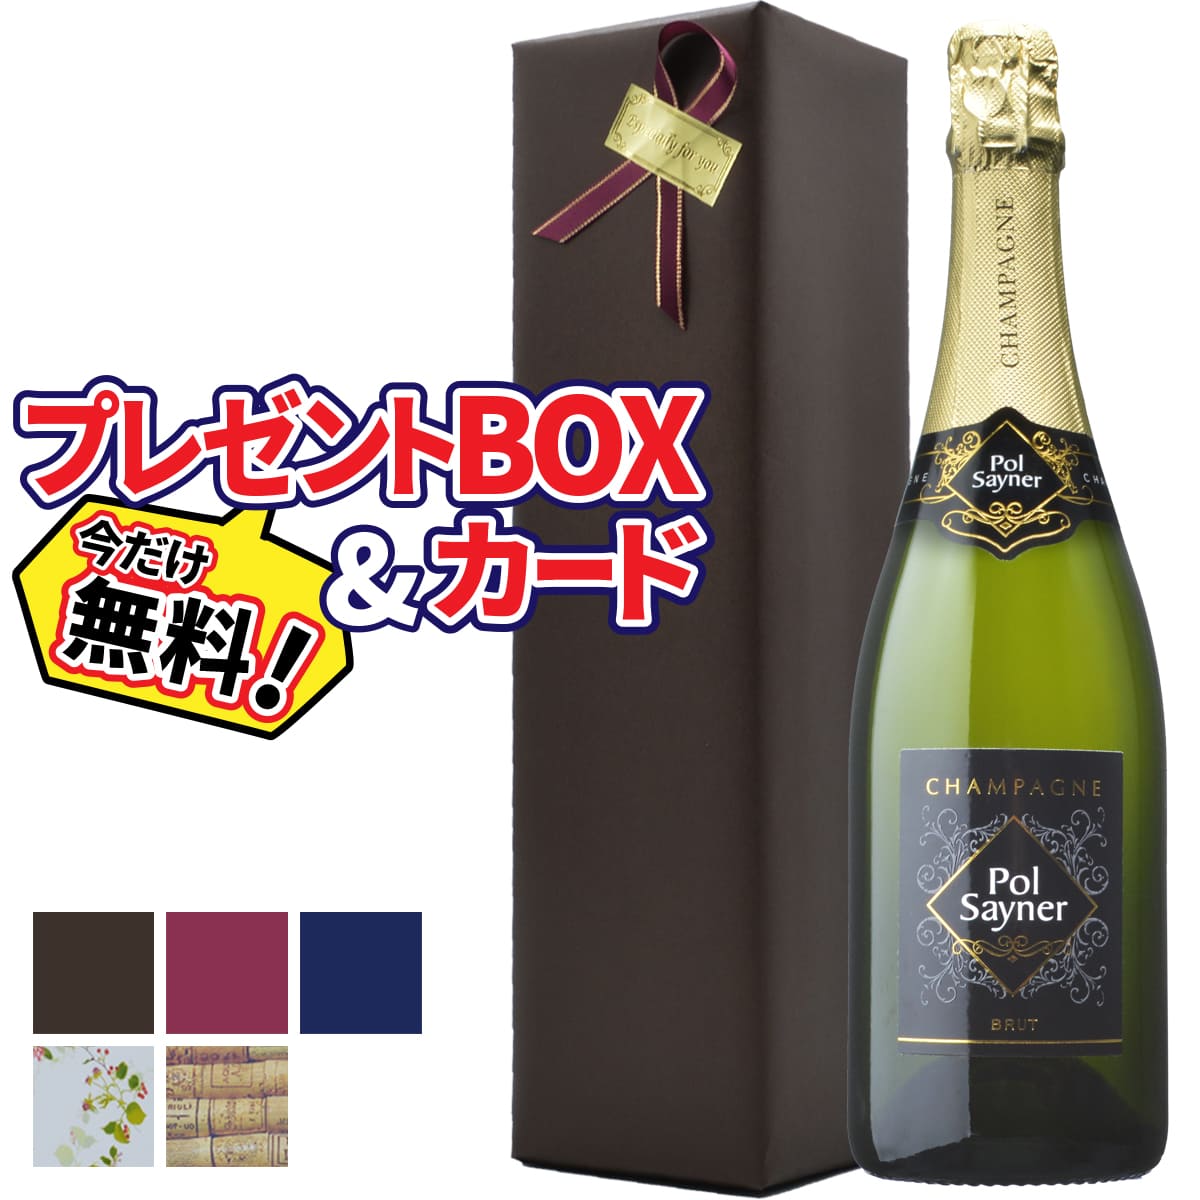 シャンパン【プレゼント包装 無料】ポル セイナー ブリュット